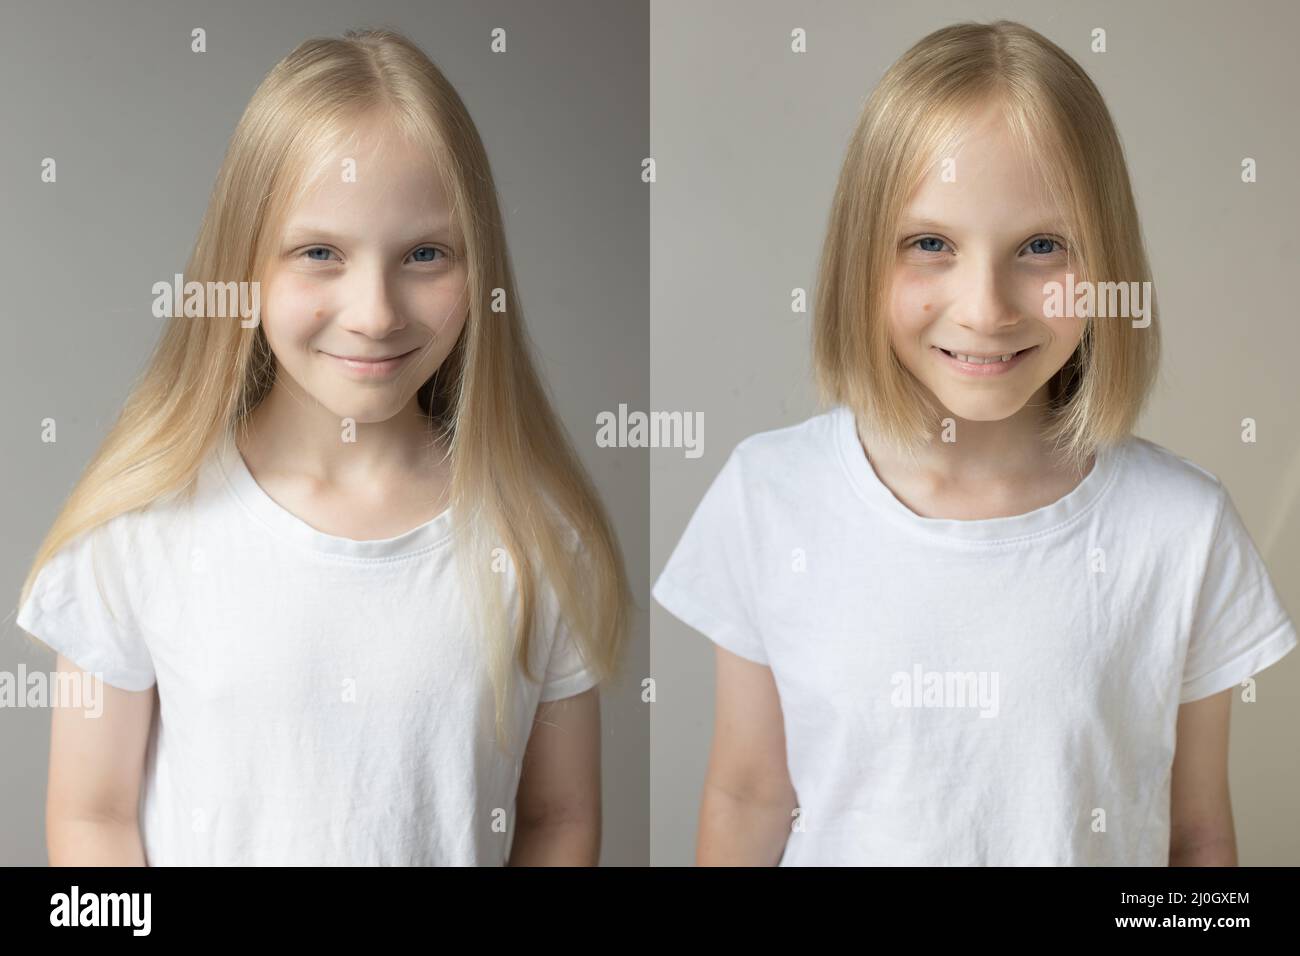 Une jeune fille aux cheveux longs blonds, une image avant et après ses cheveux coupés en un petit bob. Banque D'Images